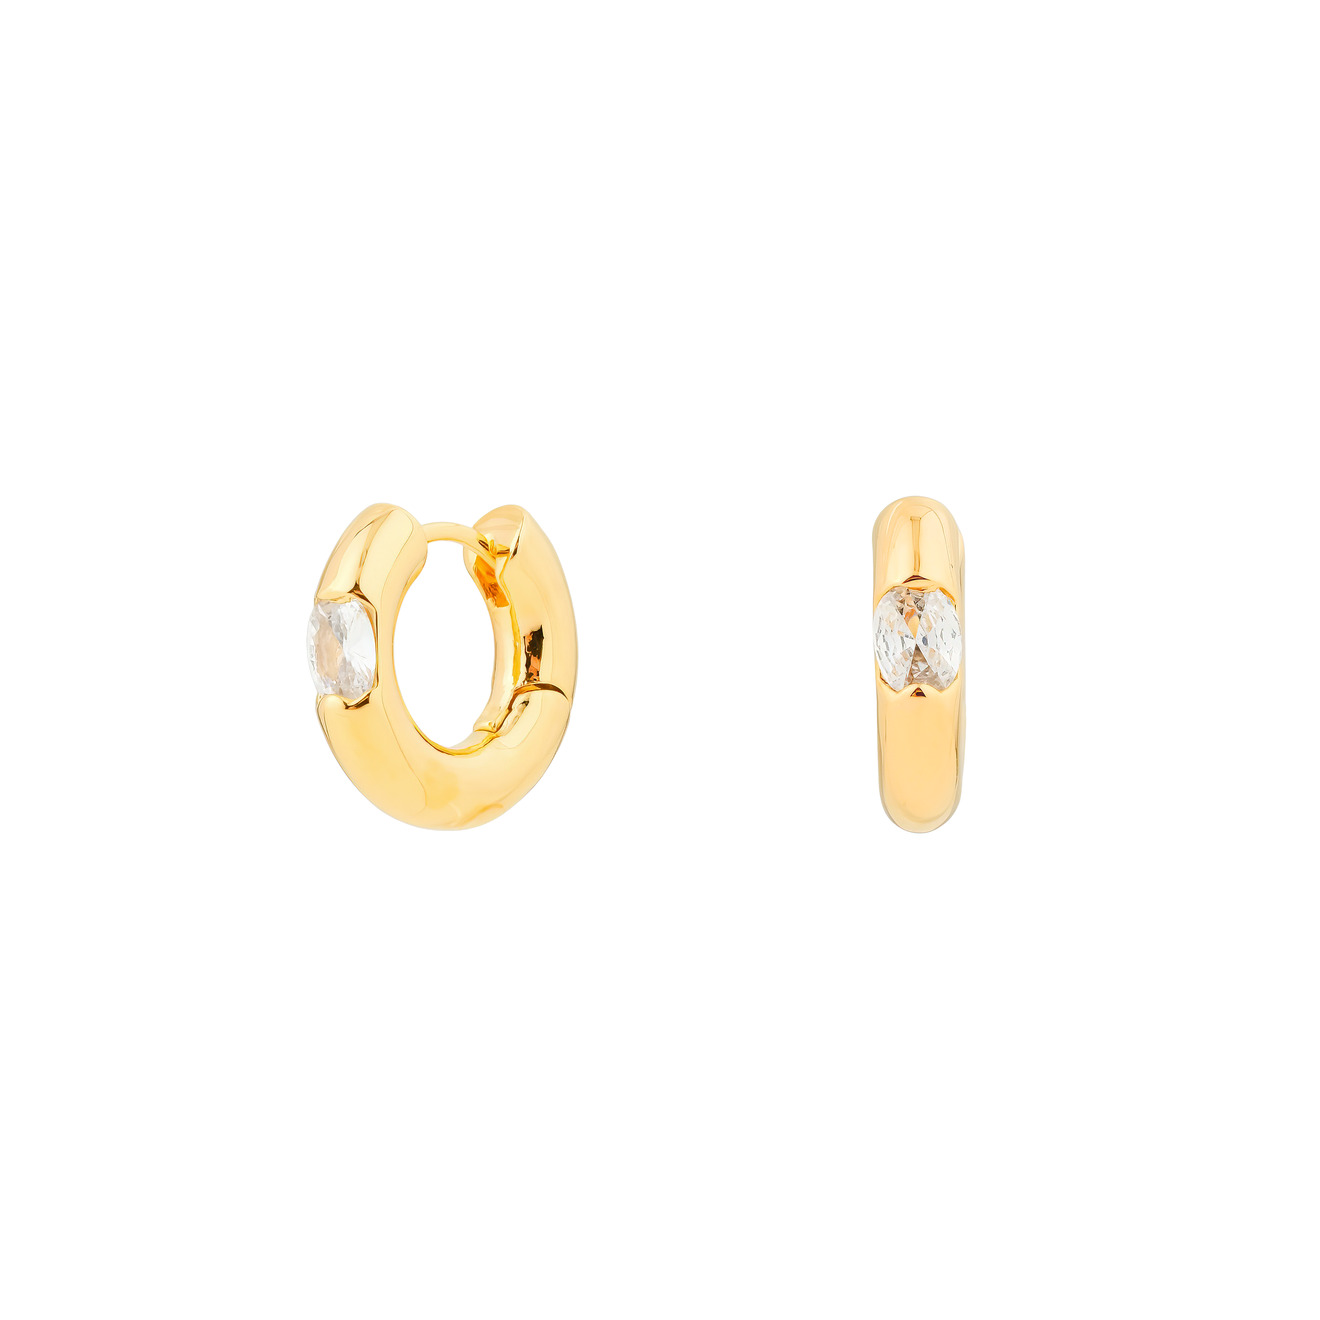 Herald Percy Золотистые дутые серьги-кольца с овальными кристаллами herald percy золотистые изогнутые серьги с кристаллами